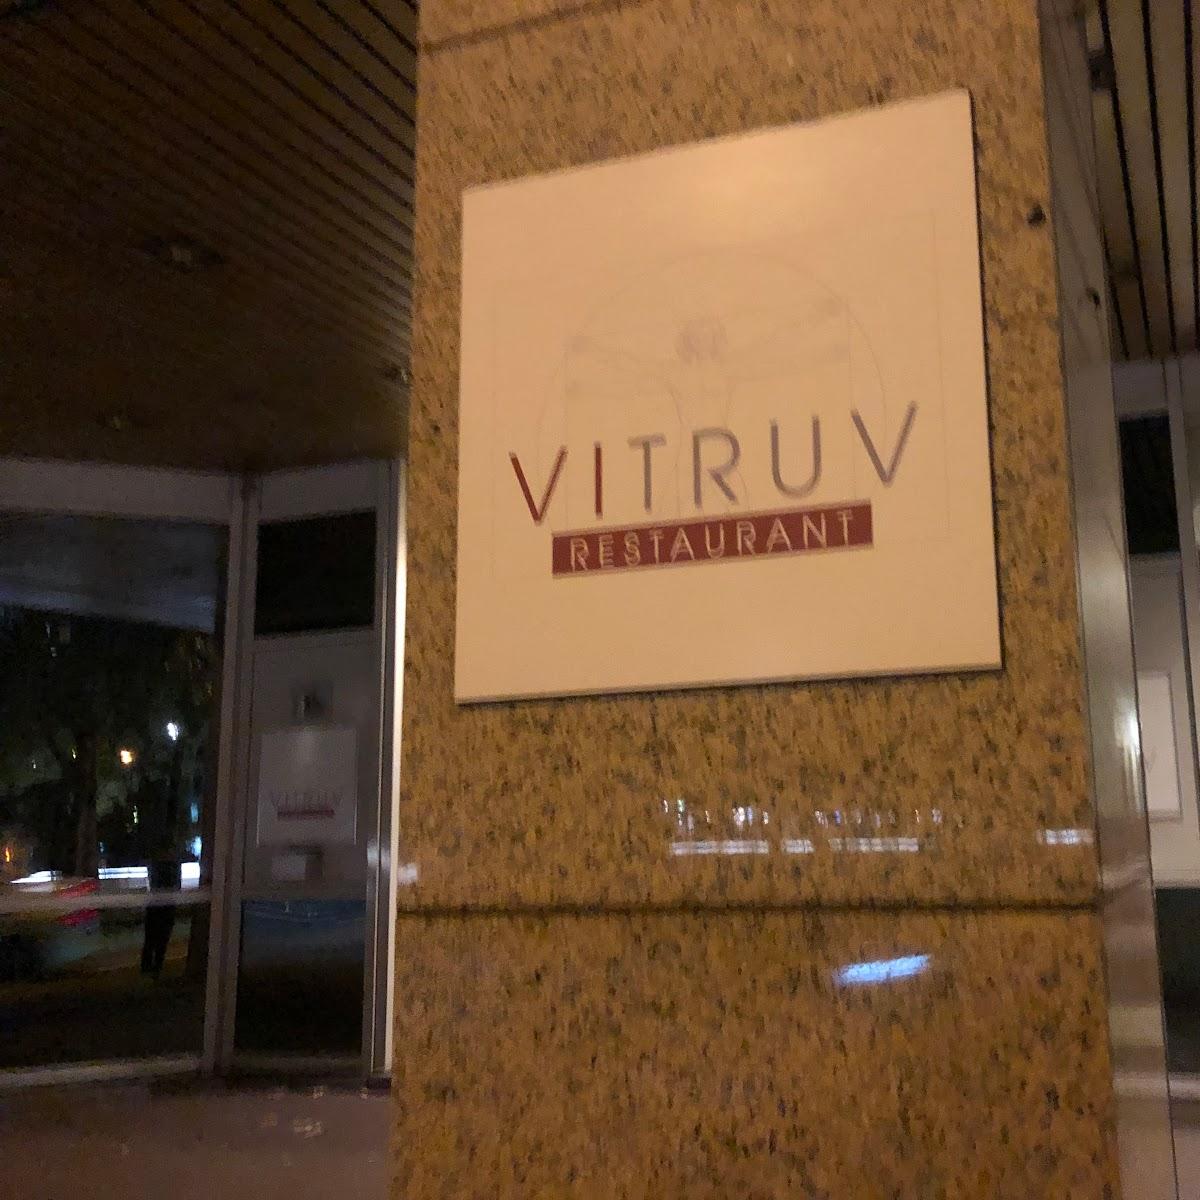 Restaurant "Vitruv im Leonardo Royal Hotel" in Düsseldorf